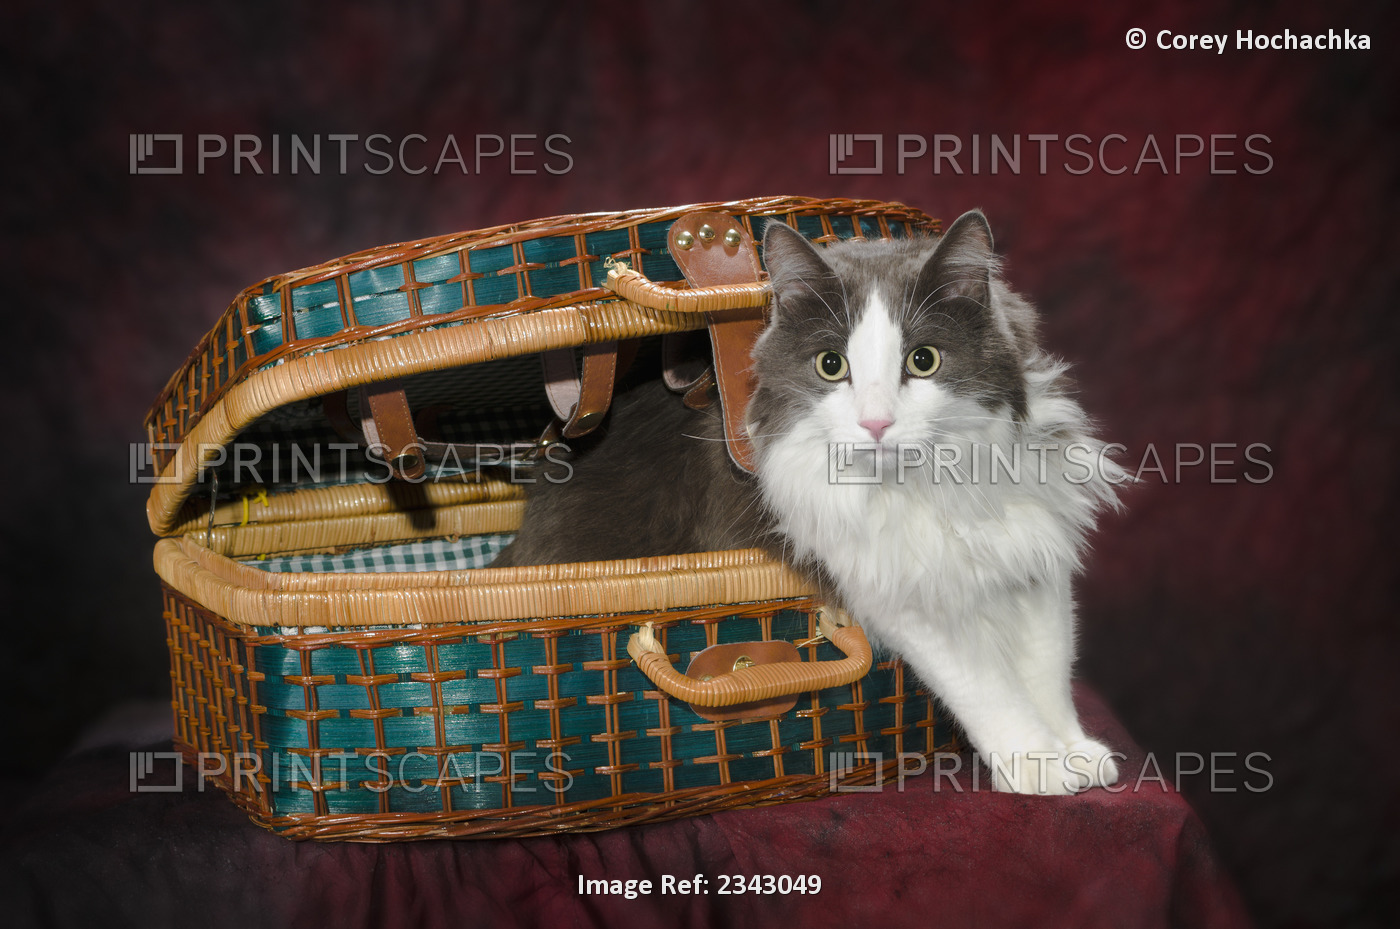 Portrait of a cat in a basket;St. albert alberta canada